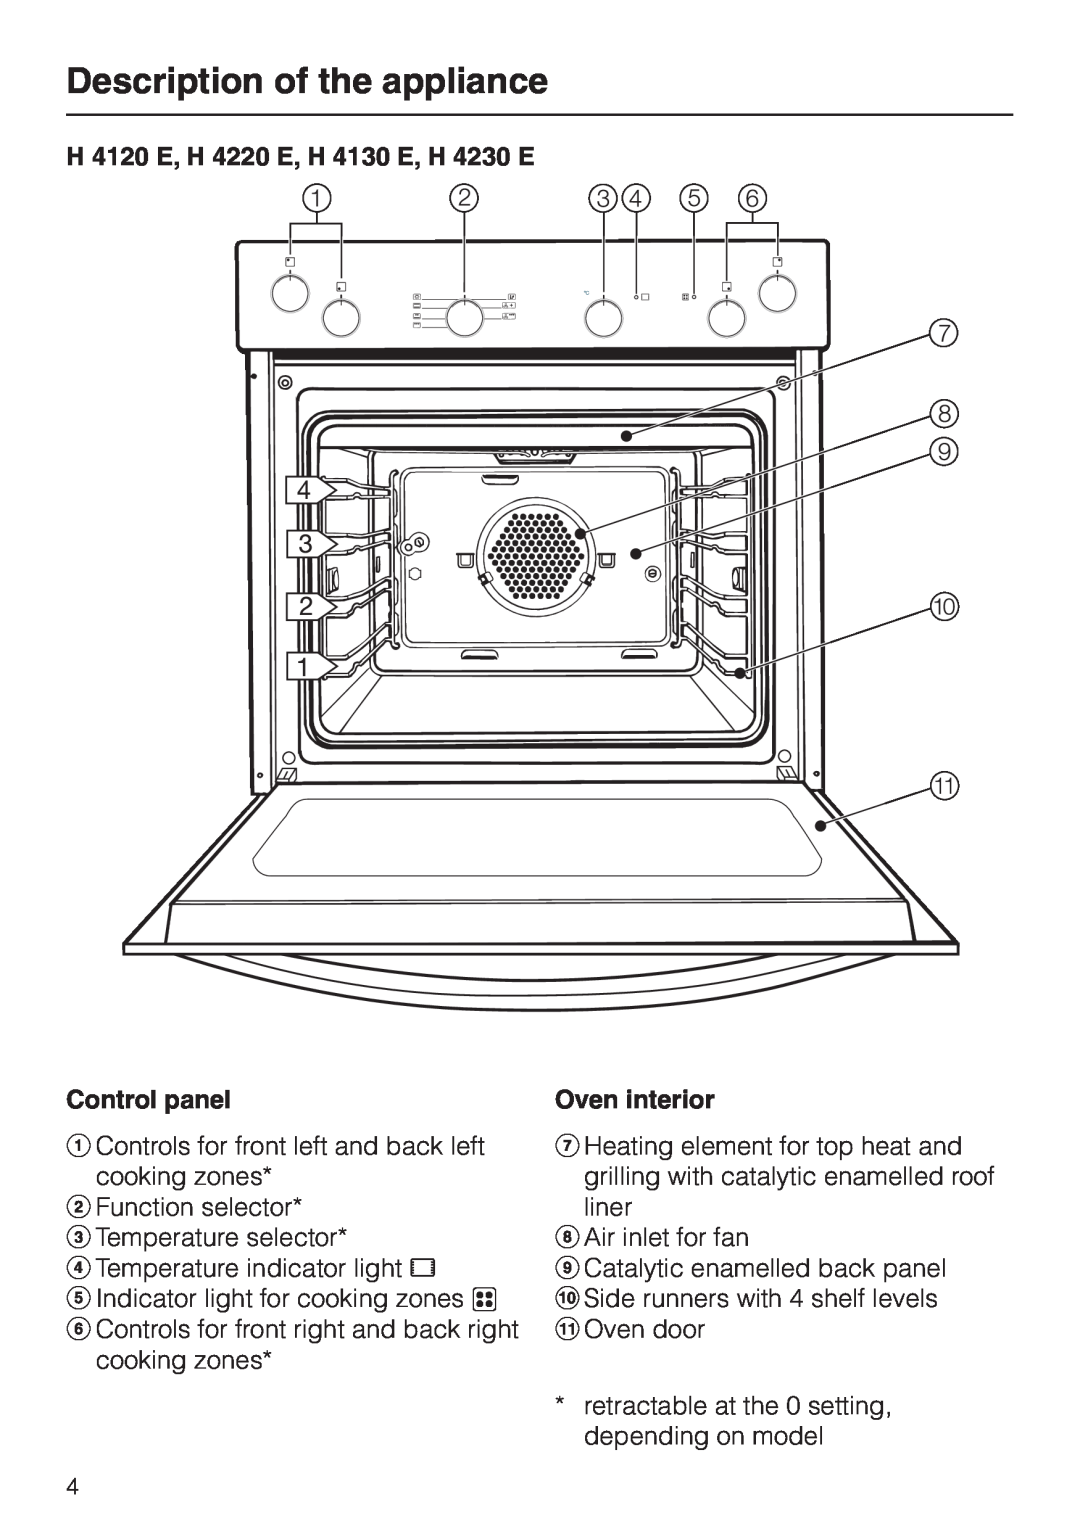 Miele H 4150, H 4160 Description of the appliance, H 4120 E, H 4220 E, H 4130 E, H 4230 E, Control panel, Oven interior 